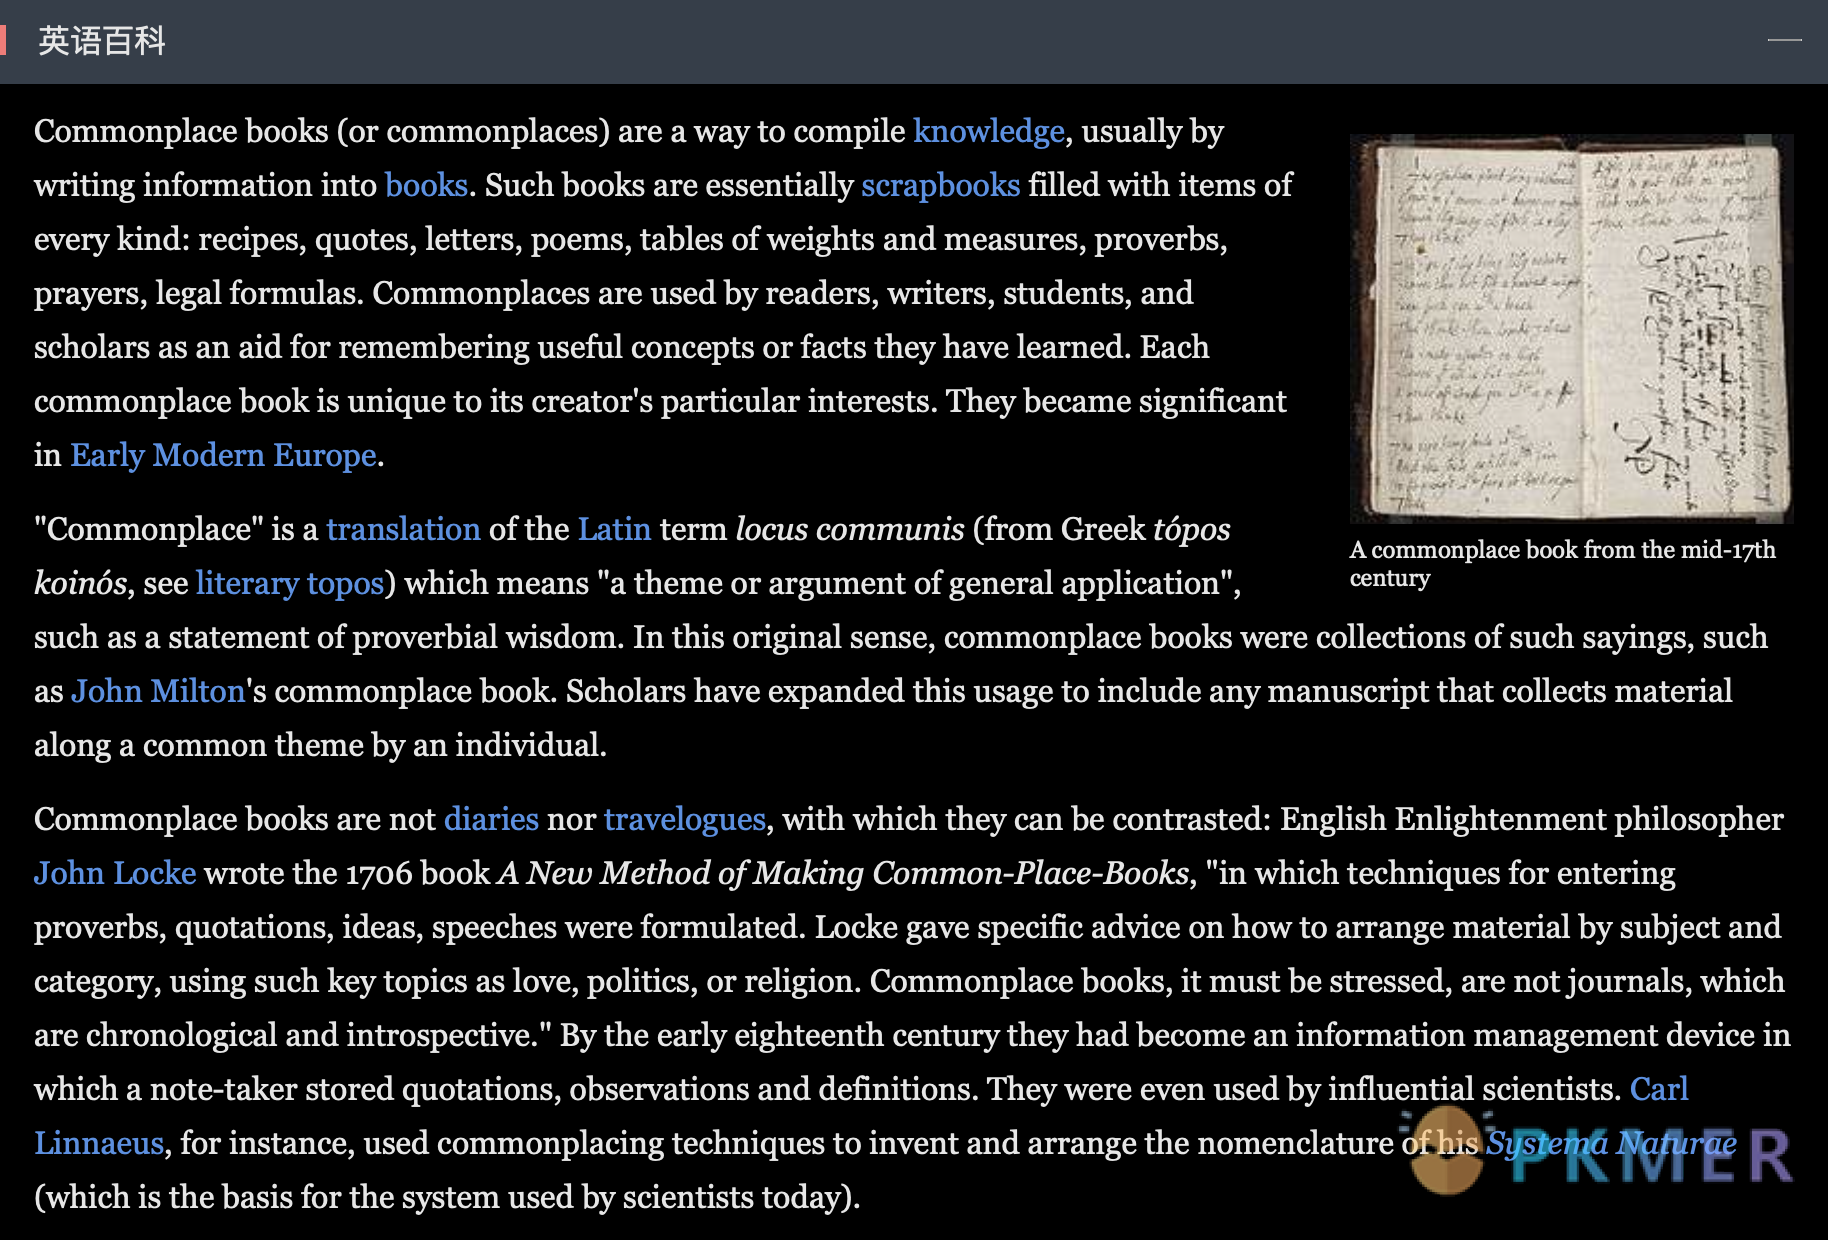 Commonplace-book 笔记法--英语百科中的解释